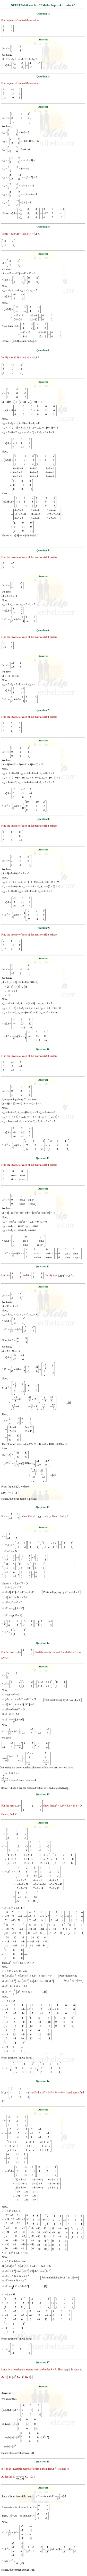 ex.4.5 Class 12 Math Chapter 4 ncert solutions